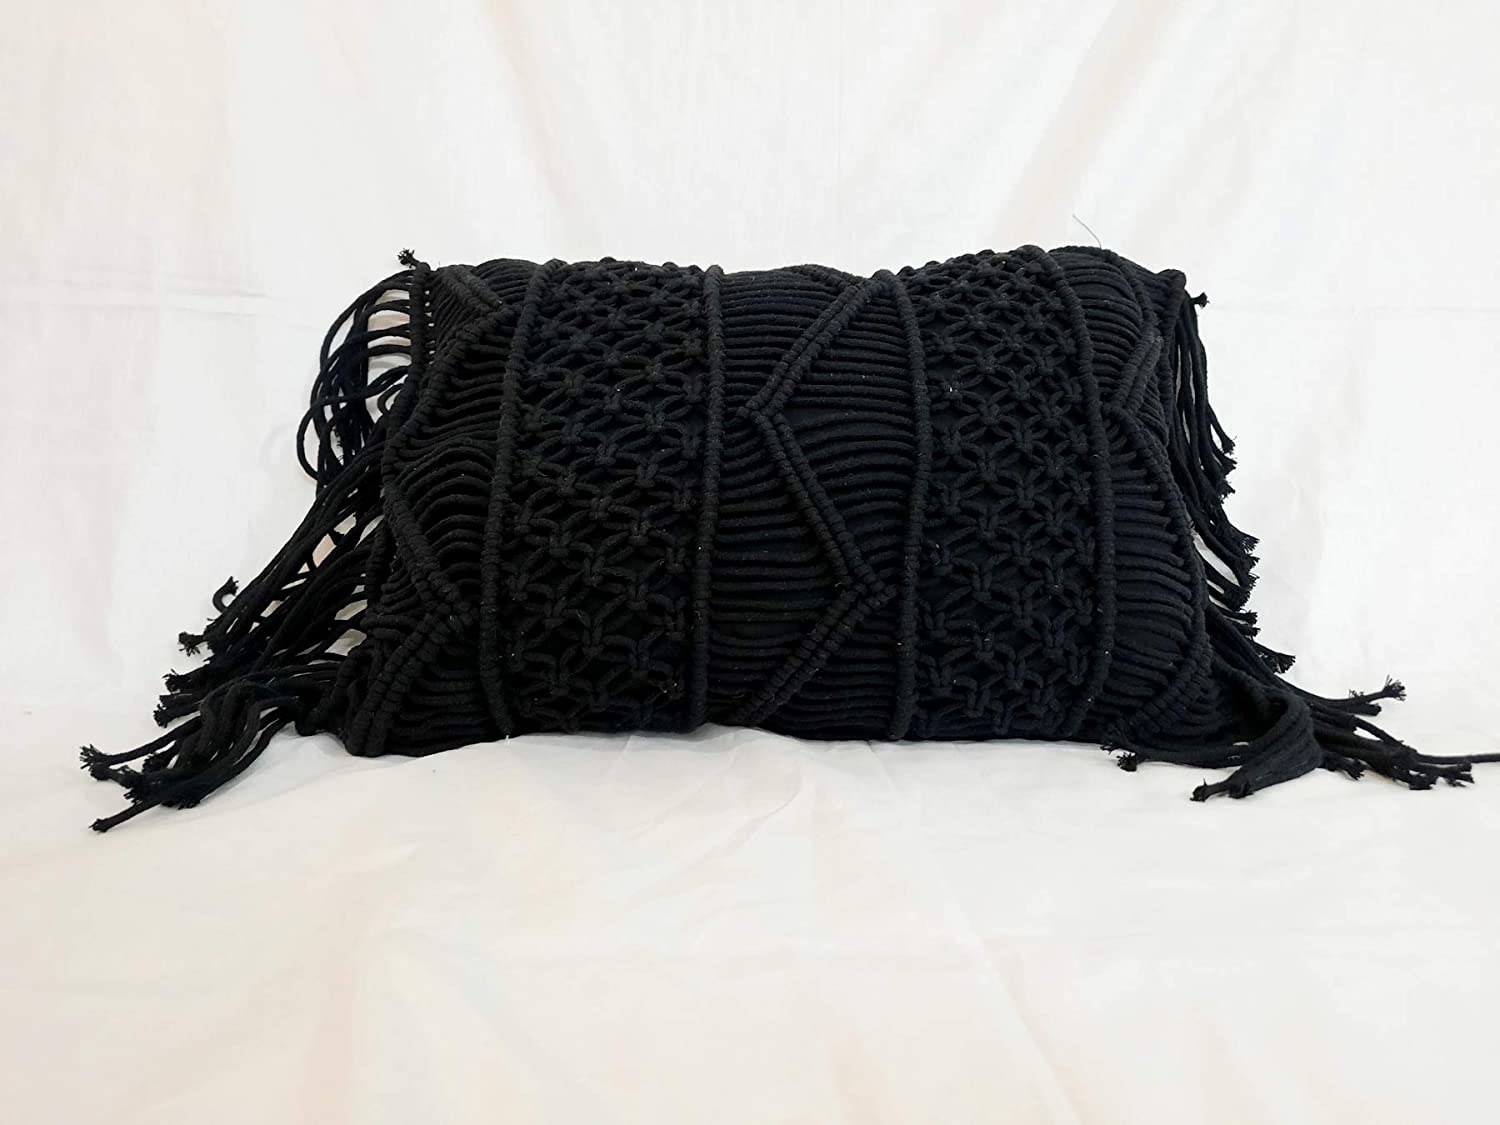 A black macrame cushion cover.